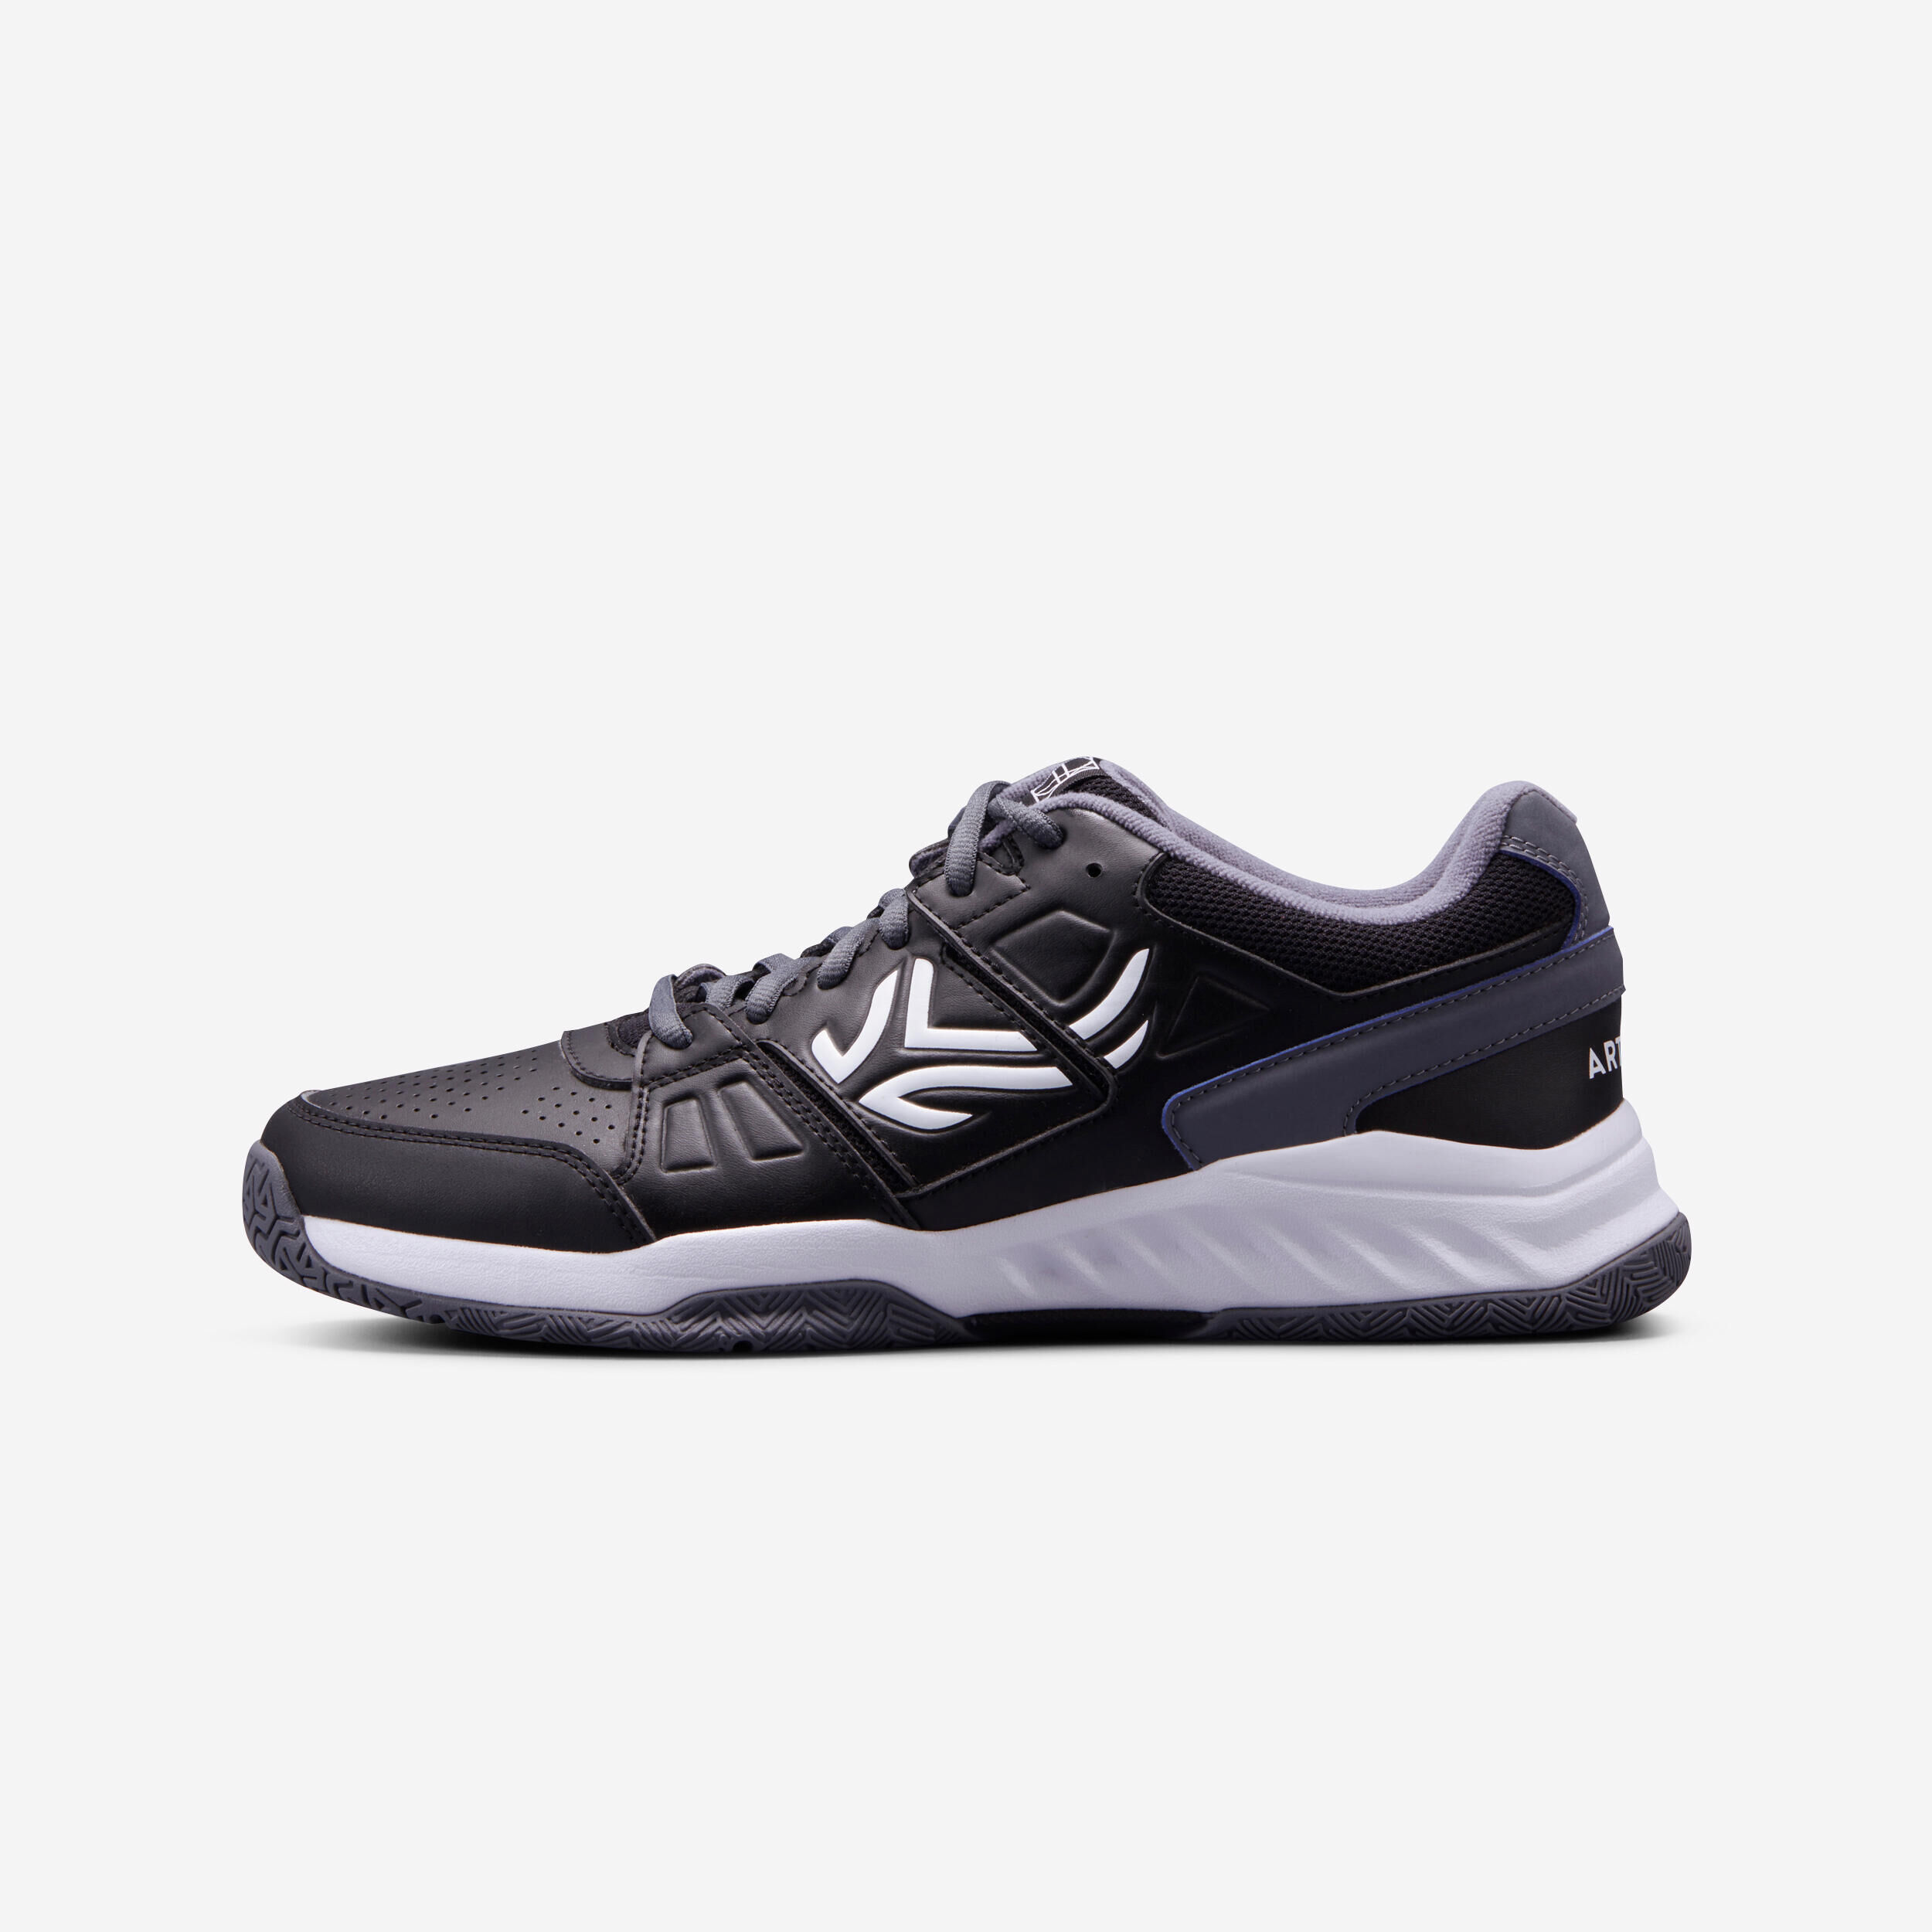 ARTENGO TS160 Multi-Court Tennis Shoes - Black